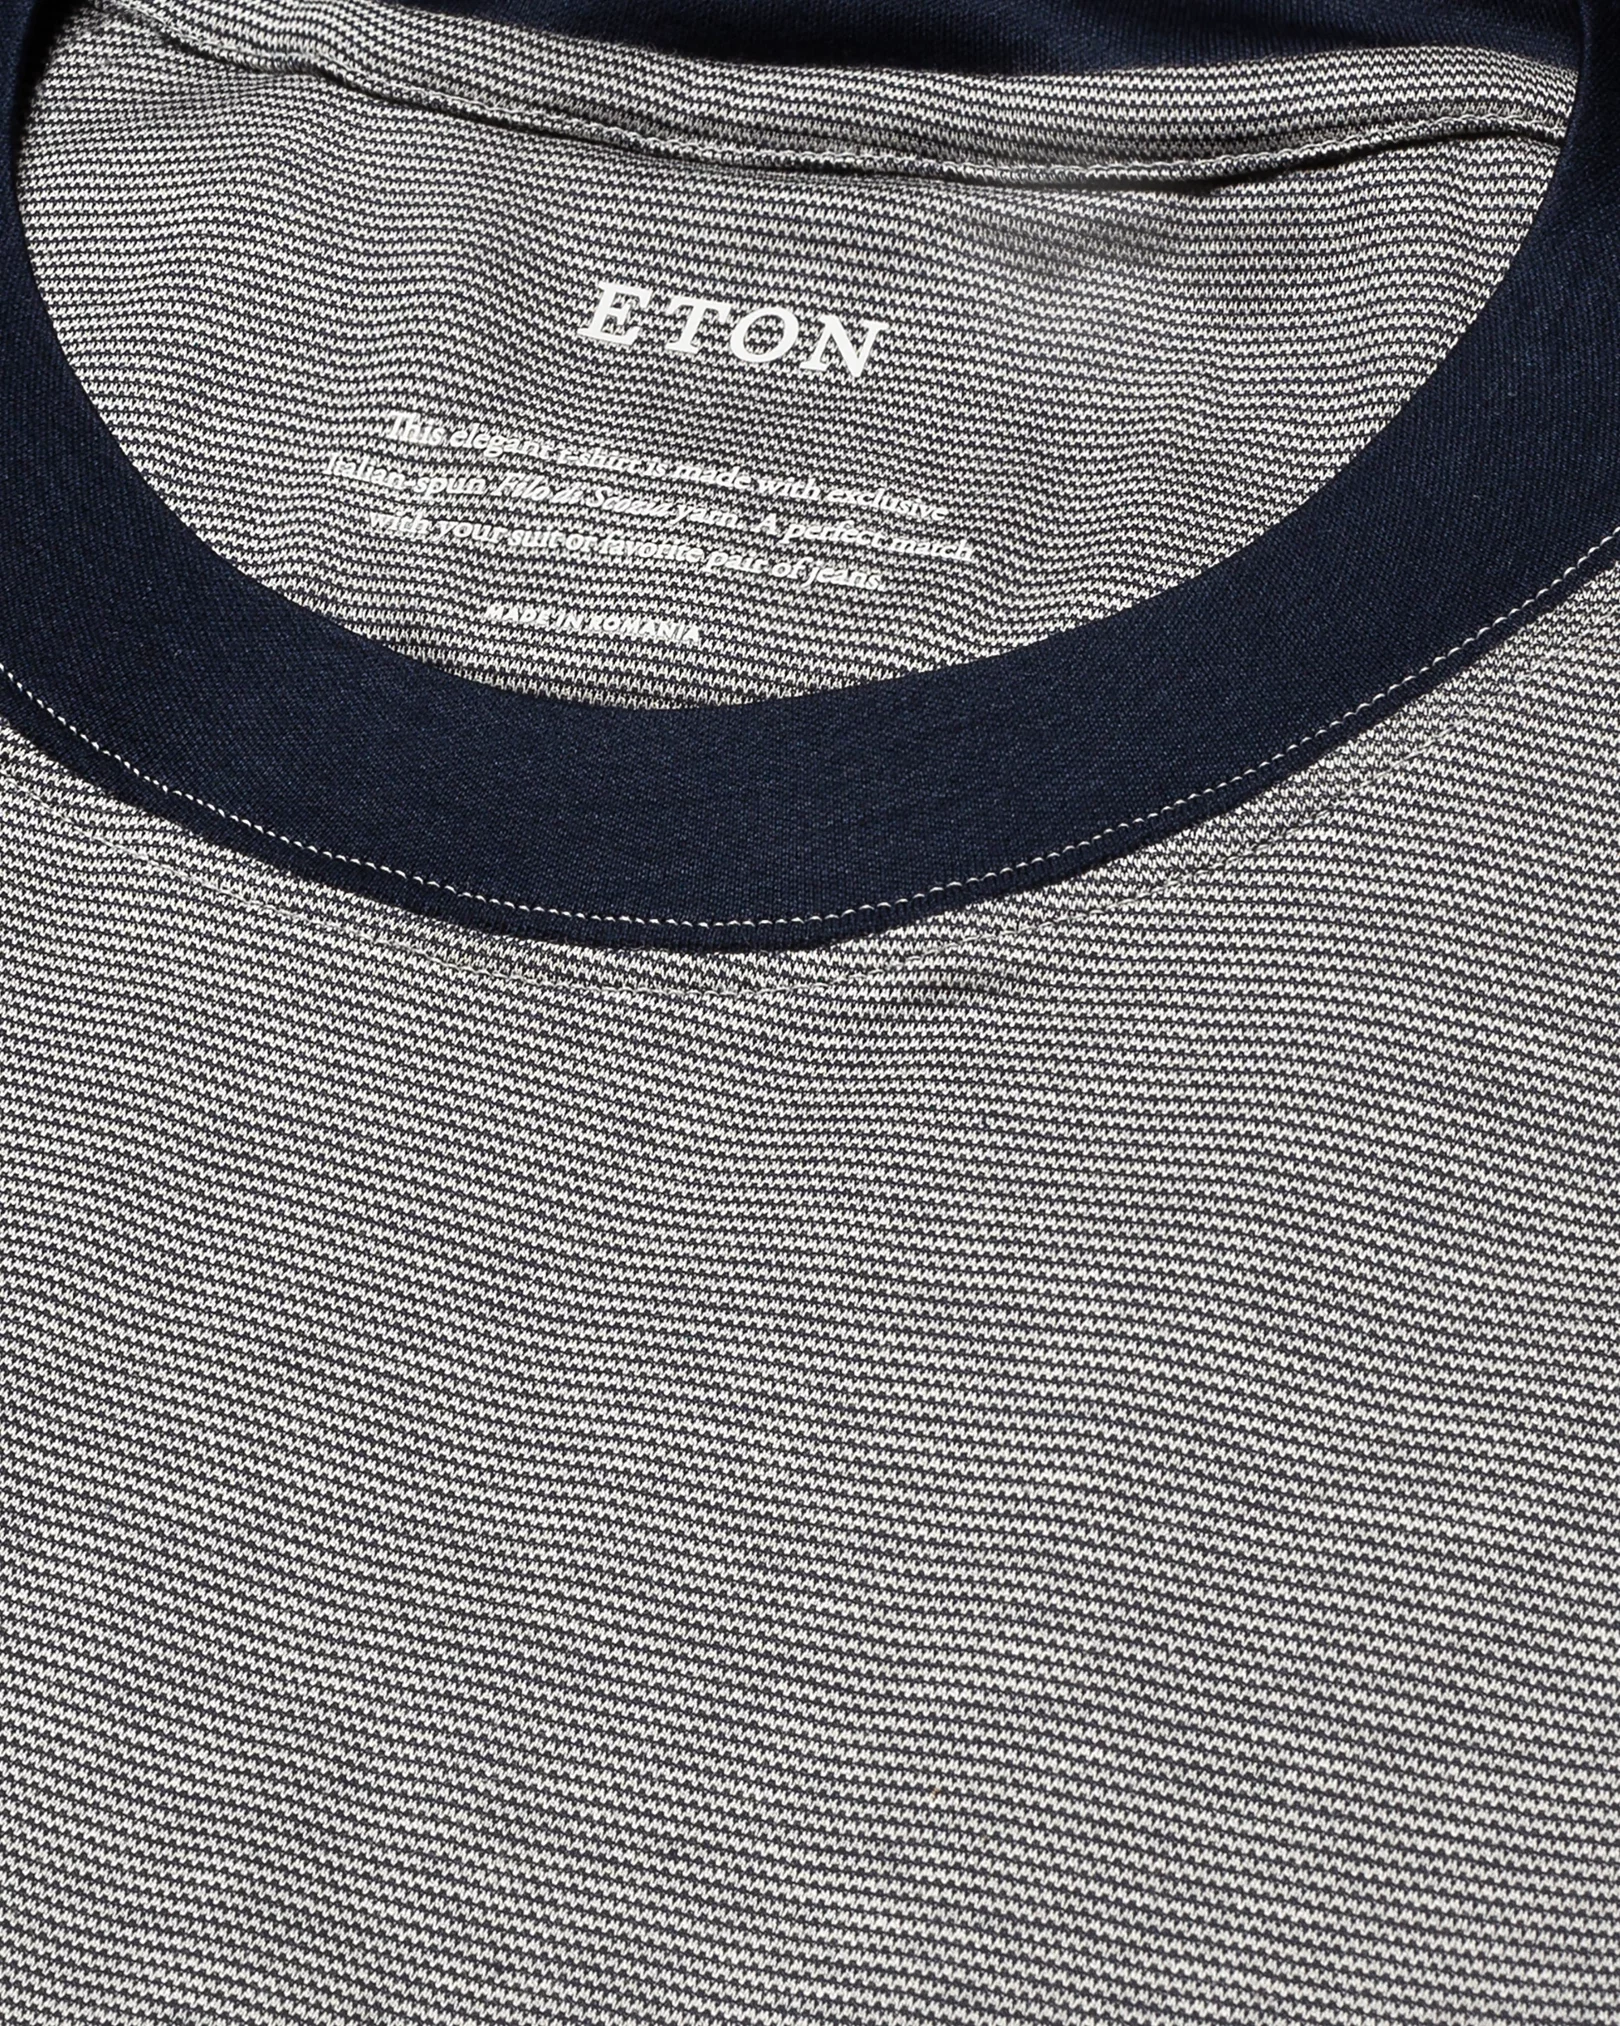 Eton - dark blue interlock jersey t shirt short sleeve t shirt t shirt